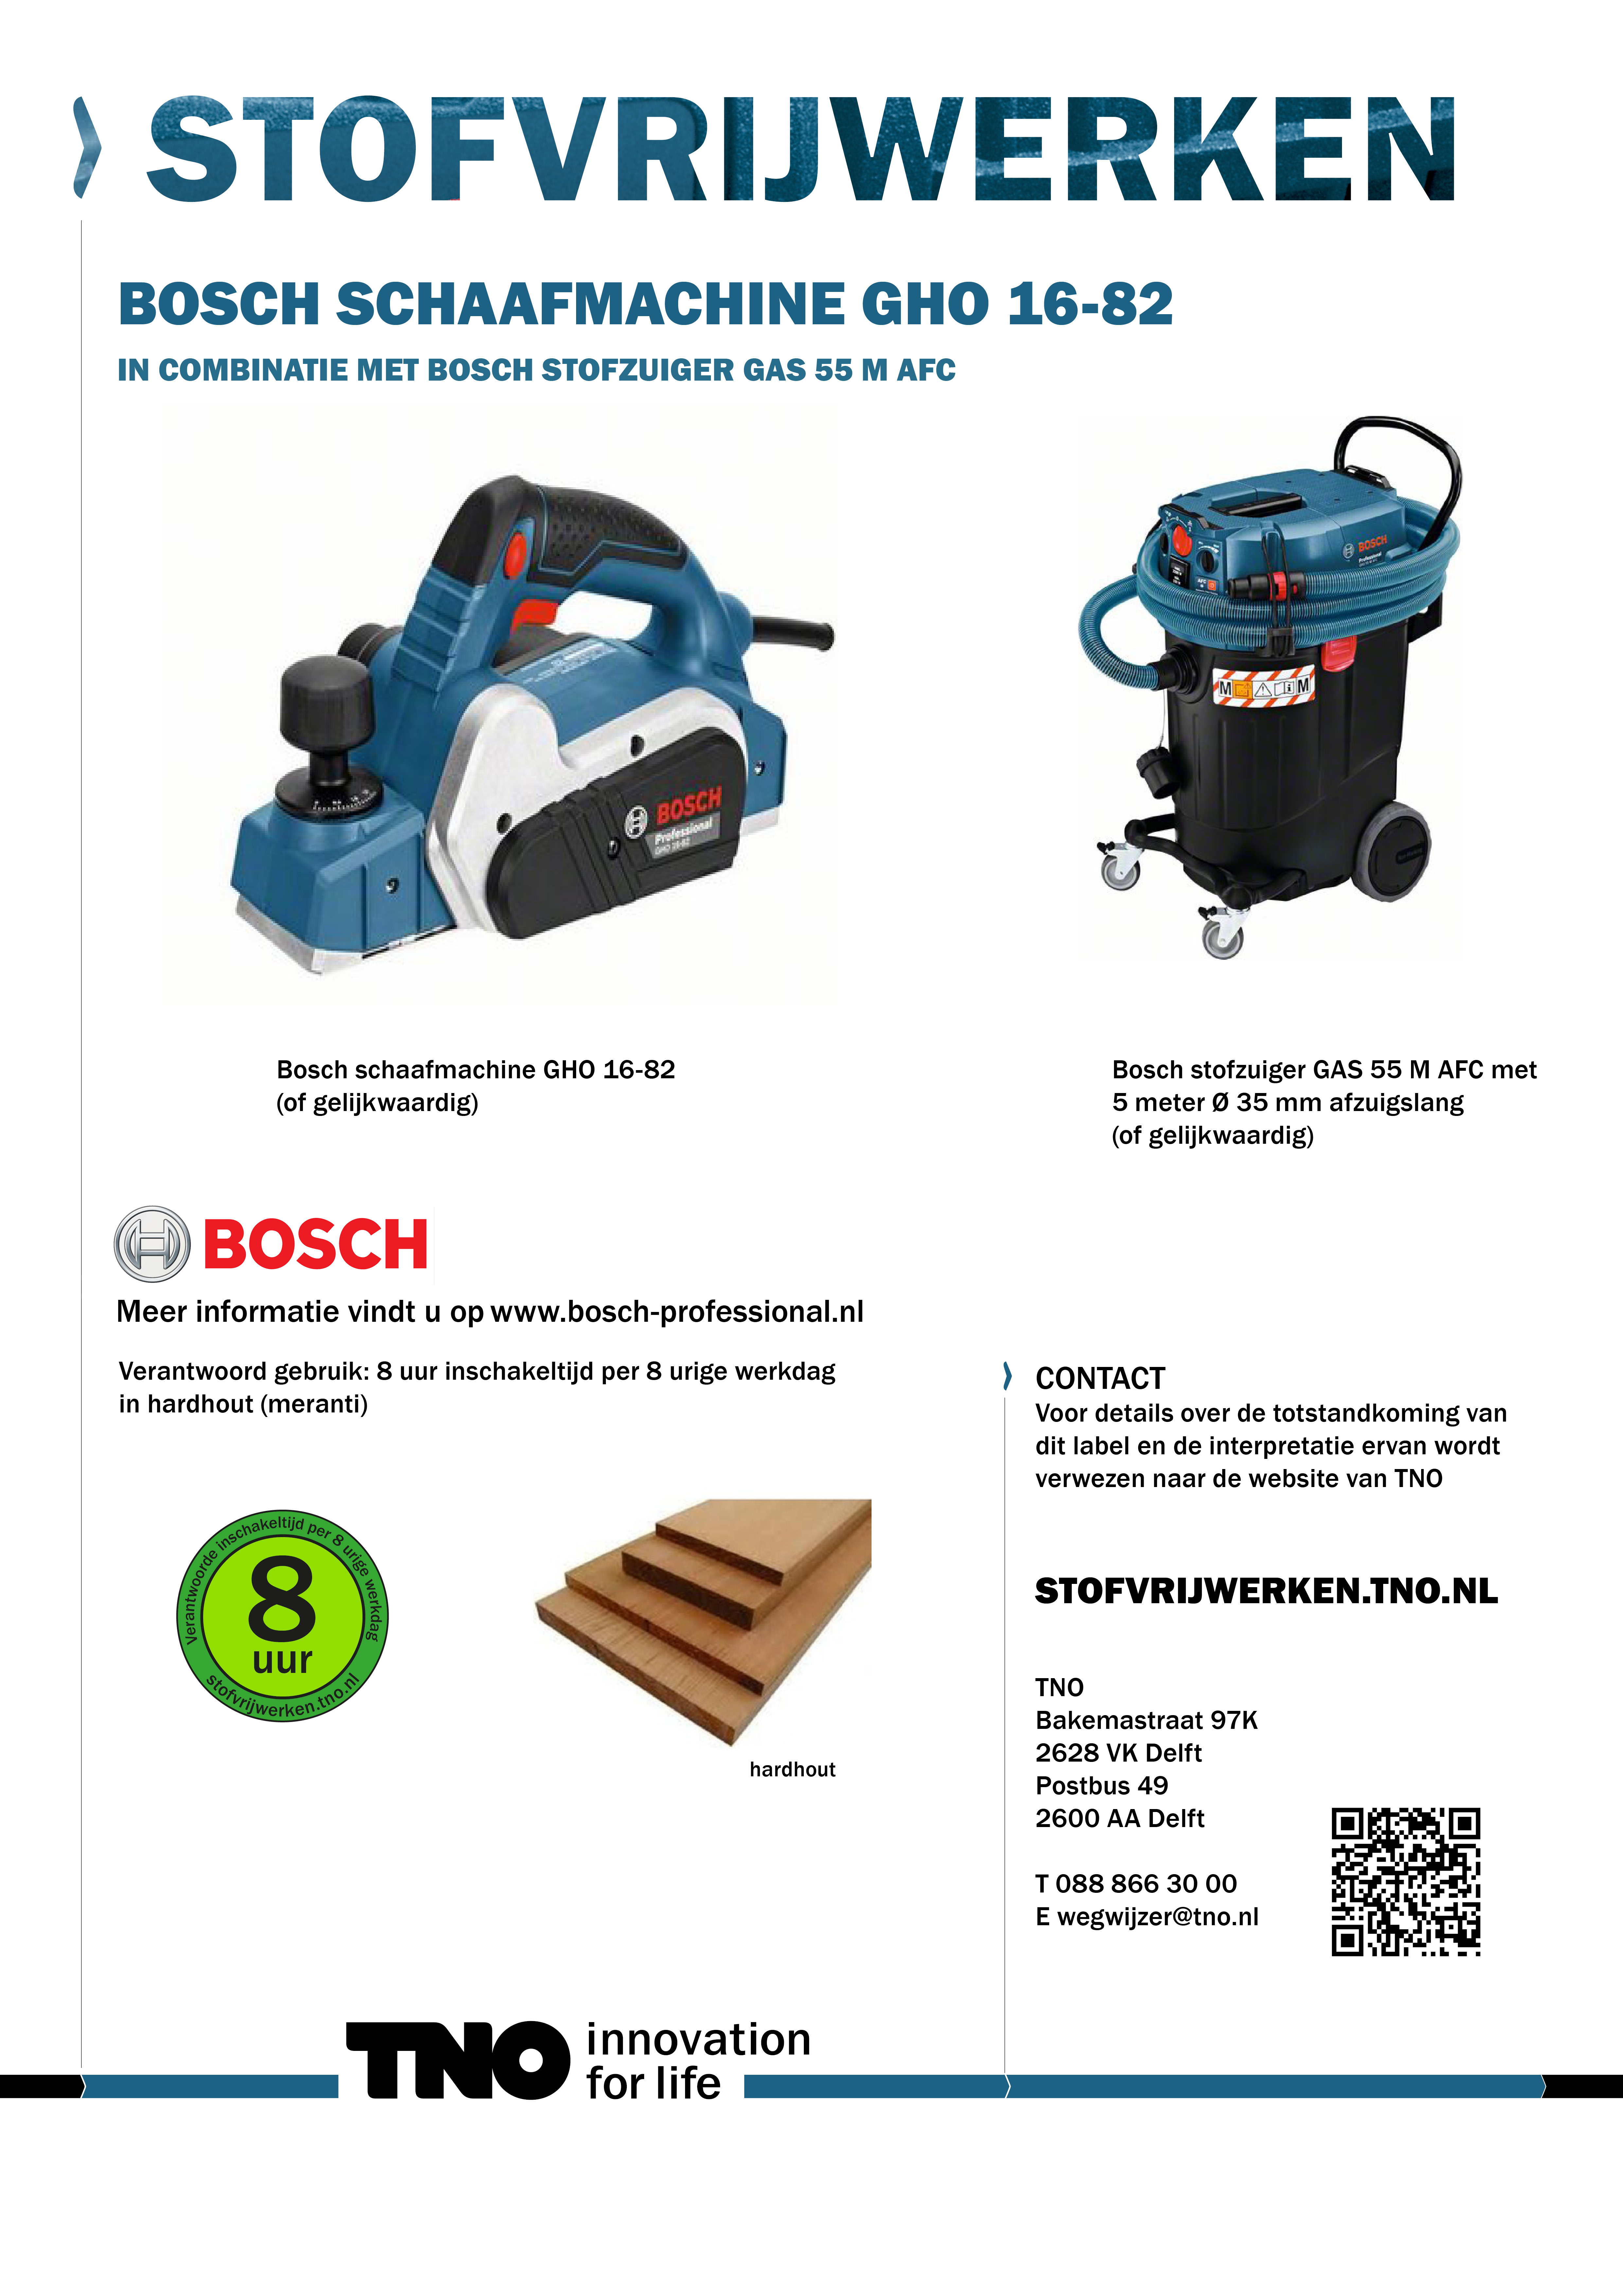 Bosch schaafmachine GHO 16-82 met Bosch stofzuiger GAS 55 M AFC